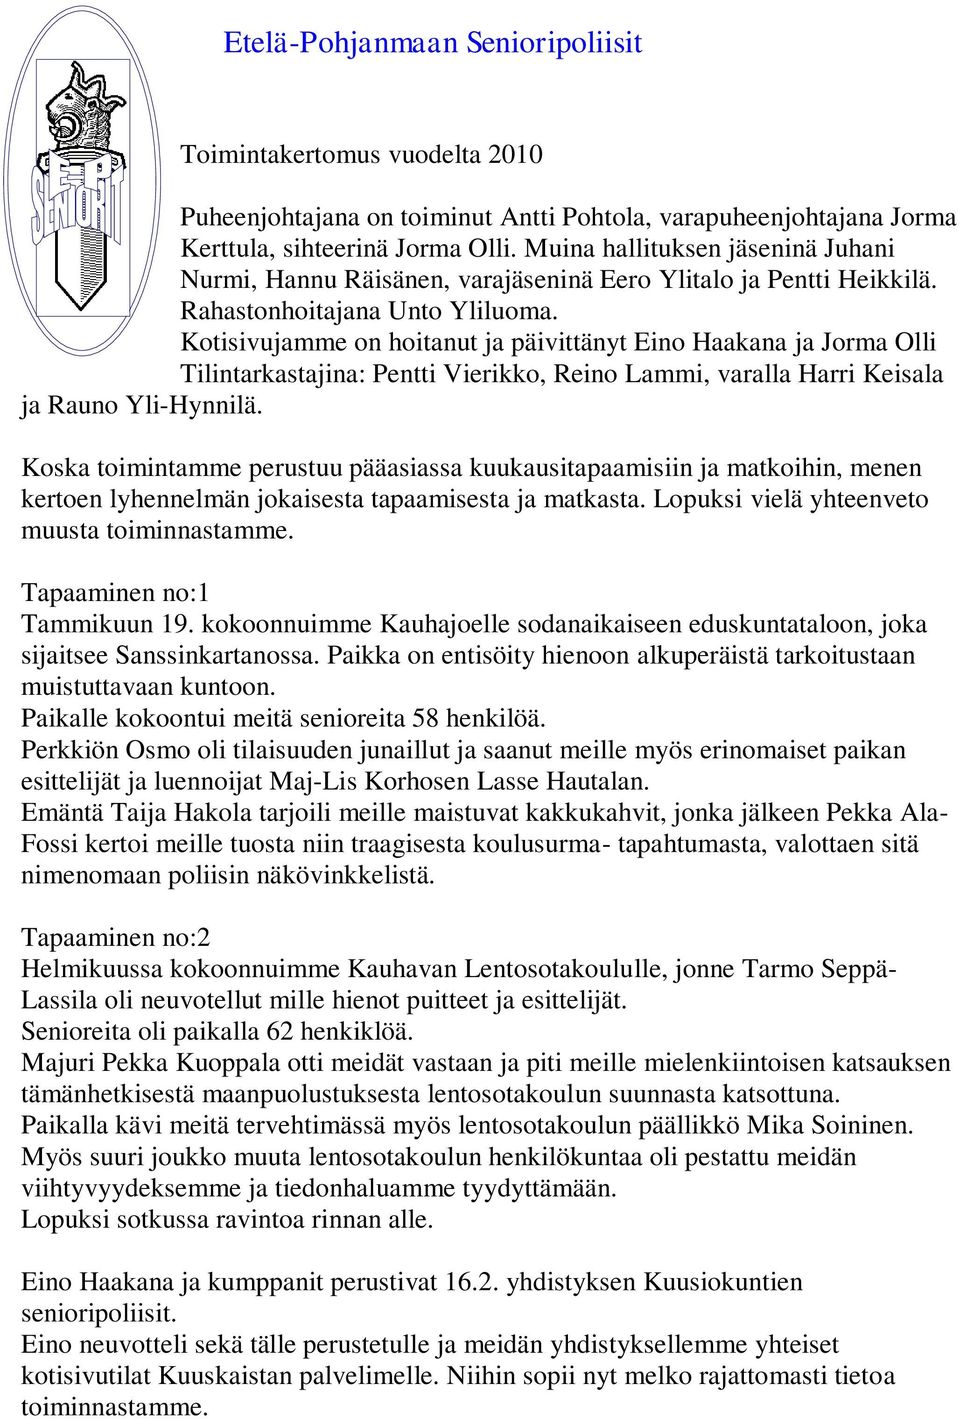 Kotisivujamme on hoitanut ja päivittänyt Eino Haakana ja Jorma Olli Tilintarkastajina: Pentti Vierikko, Reino Lammi, varalla Harri Keisala ja Rauno Yli-Hynnilä.